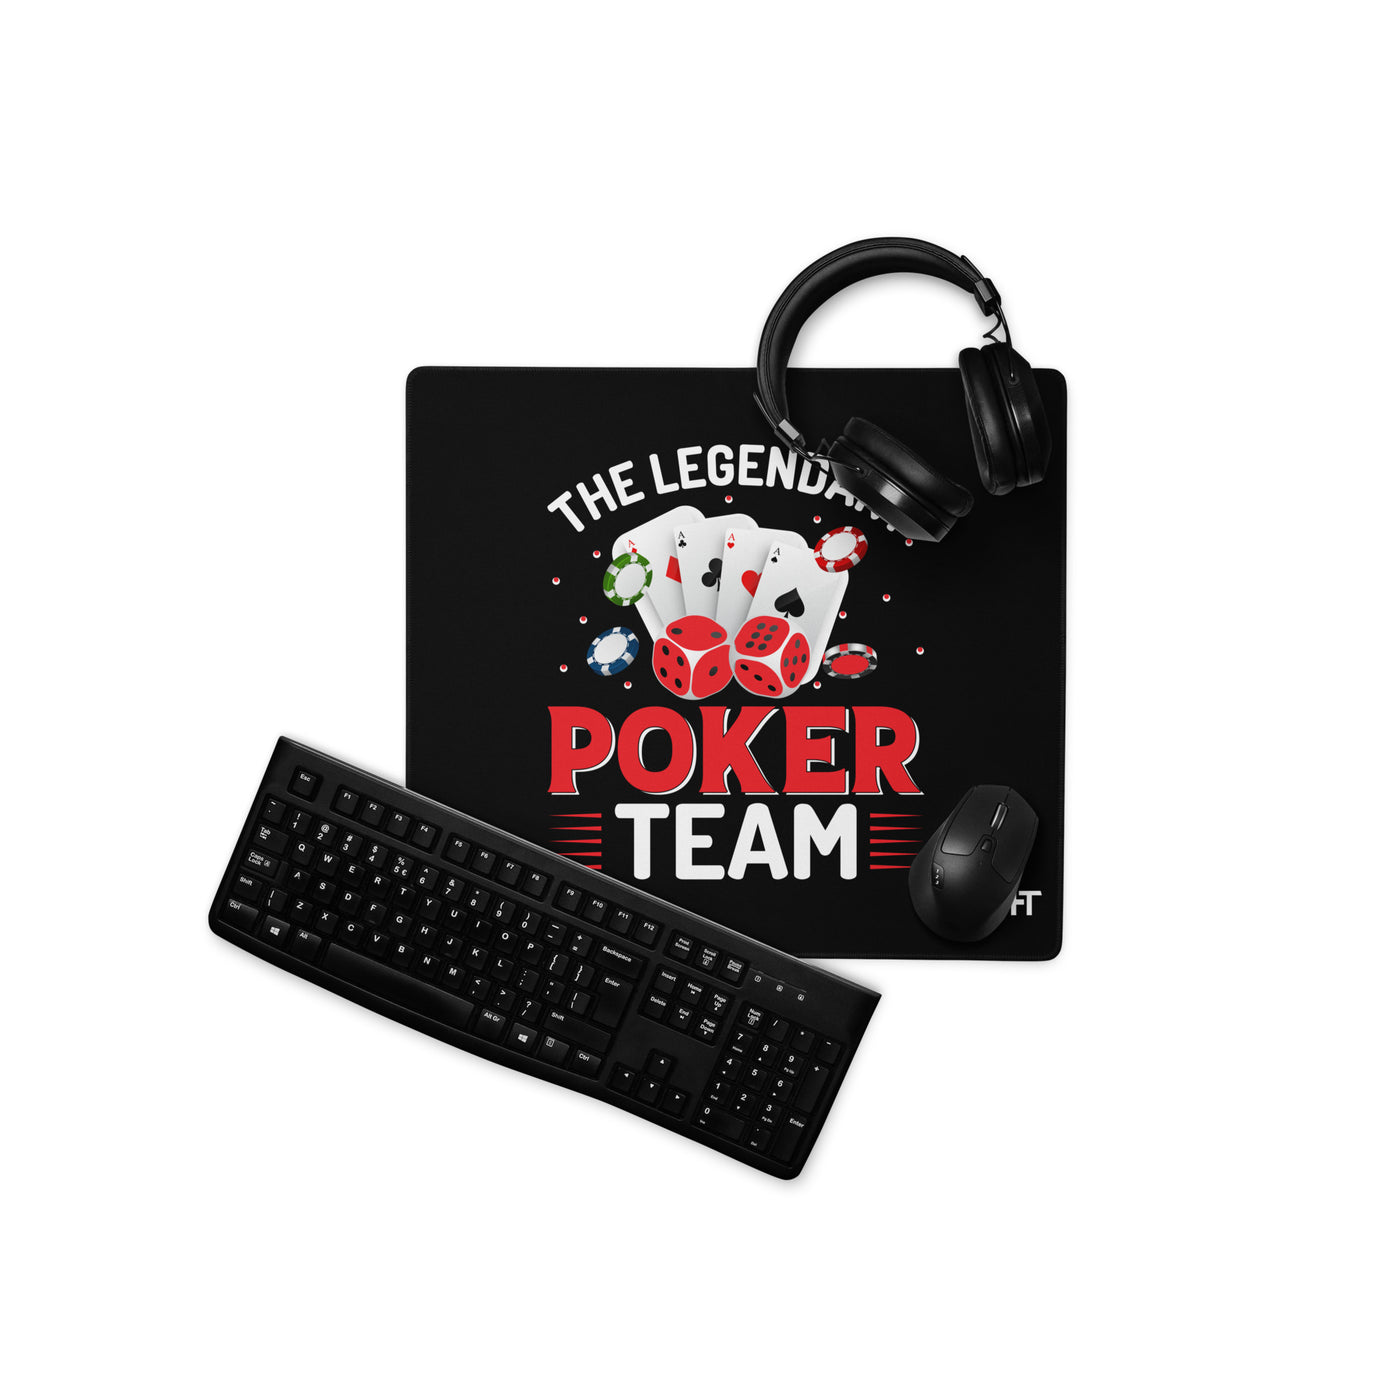 The Legendary Poker Team - Desk Mat